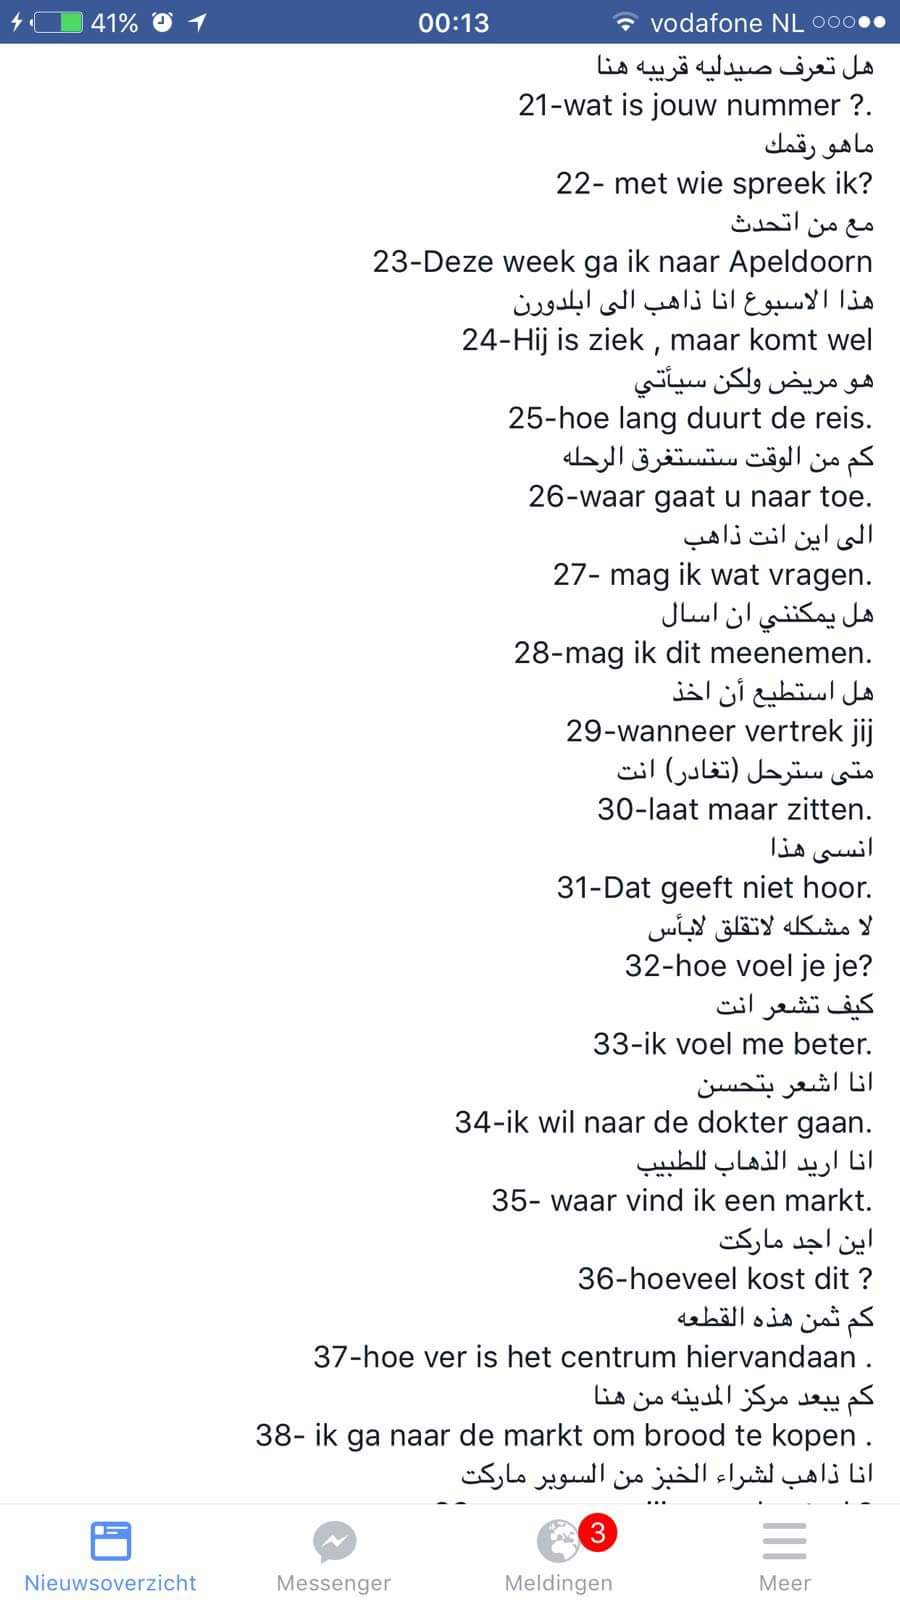 جمل وكلمات مهمة في اللغة الهولندية